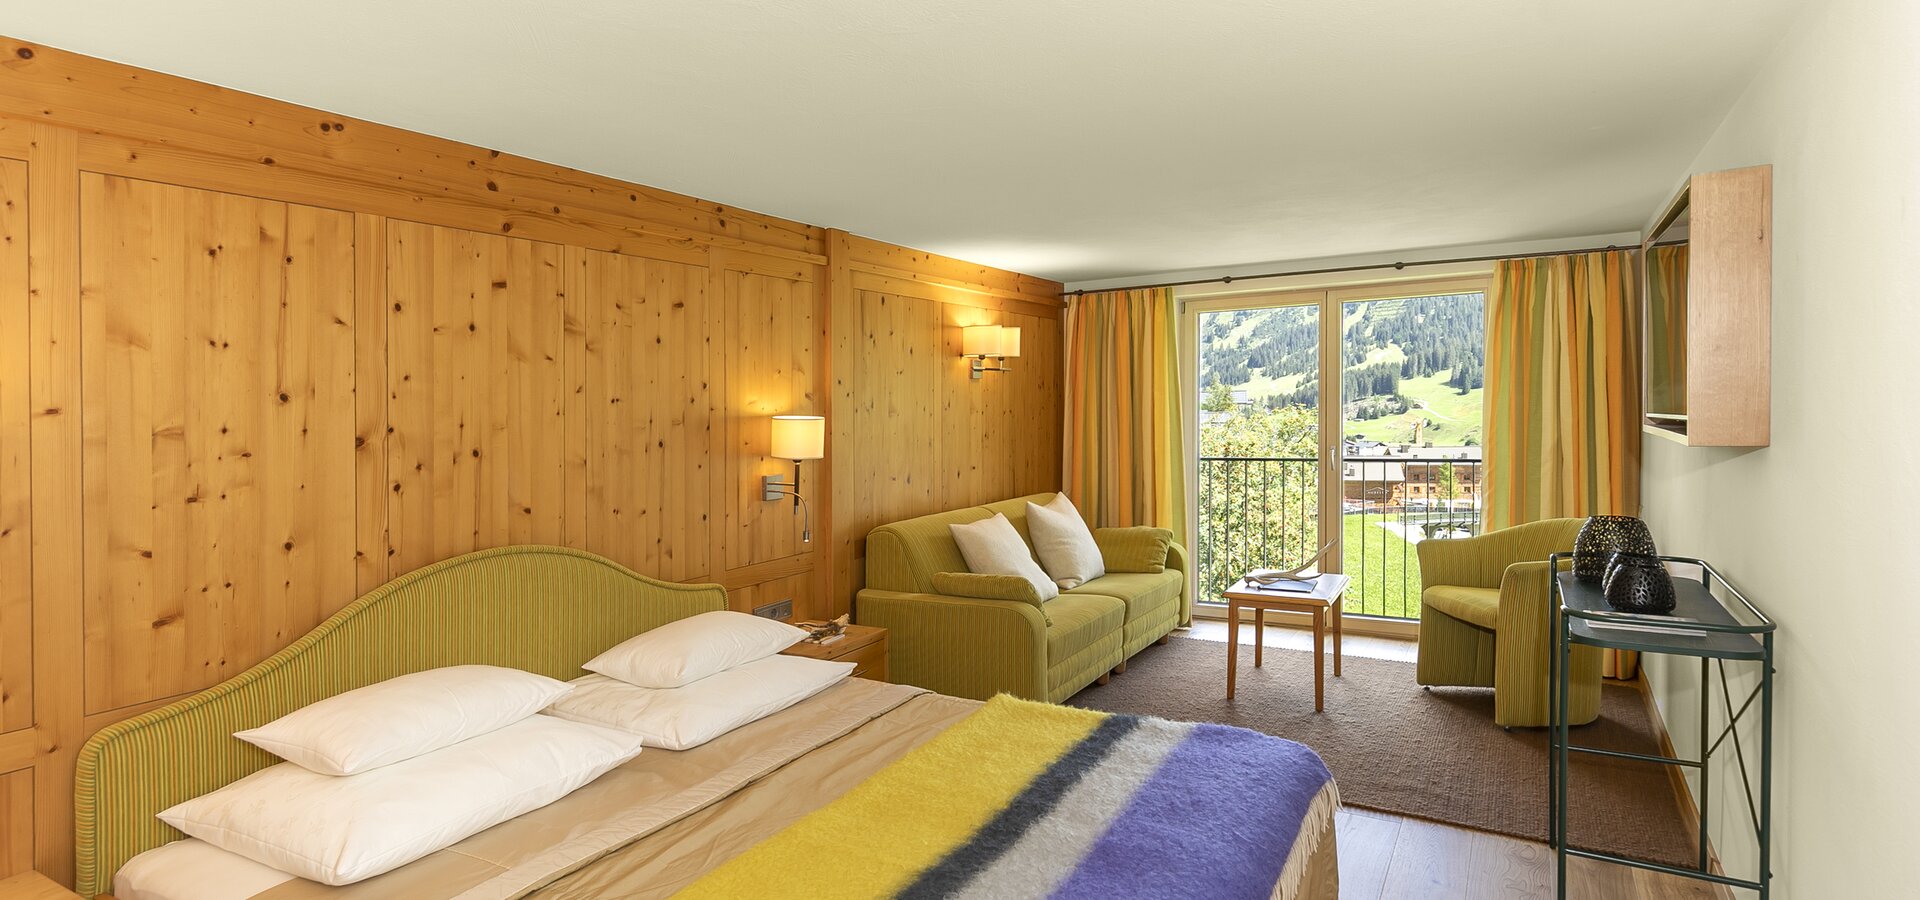 Pärchenzimmer im Hotel in Lech